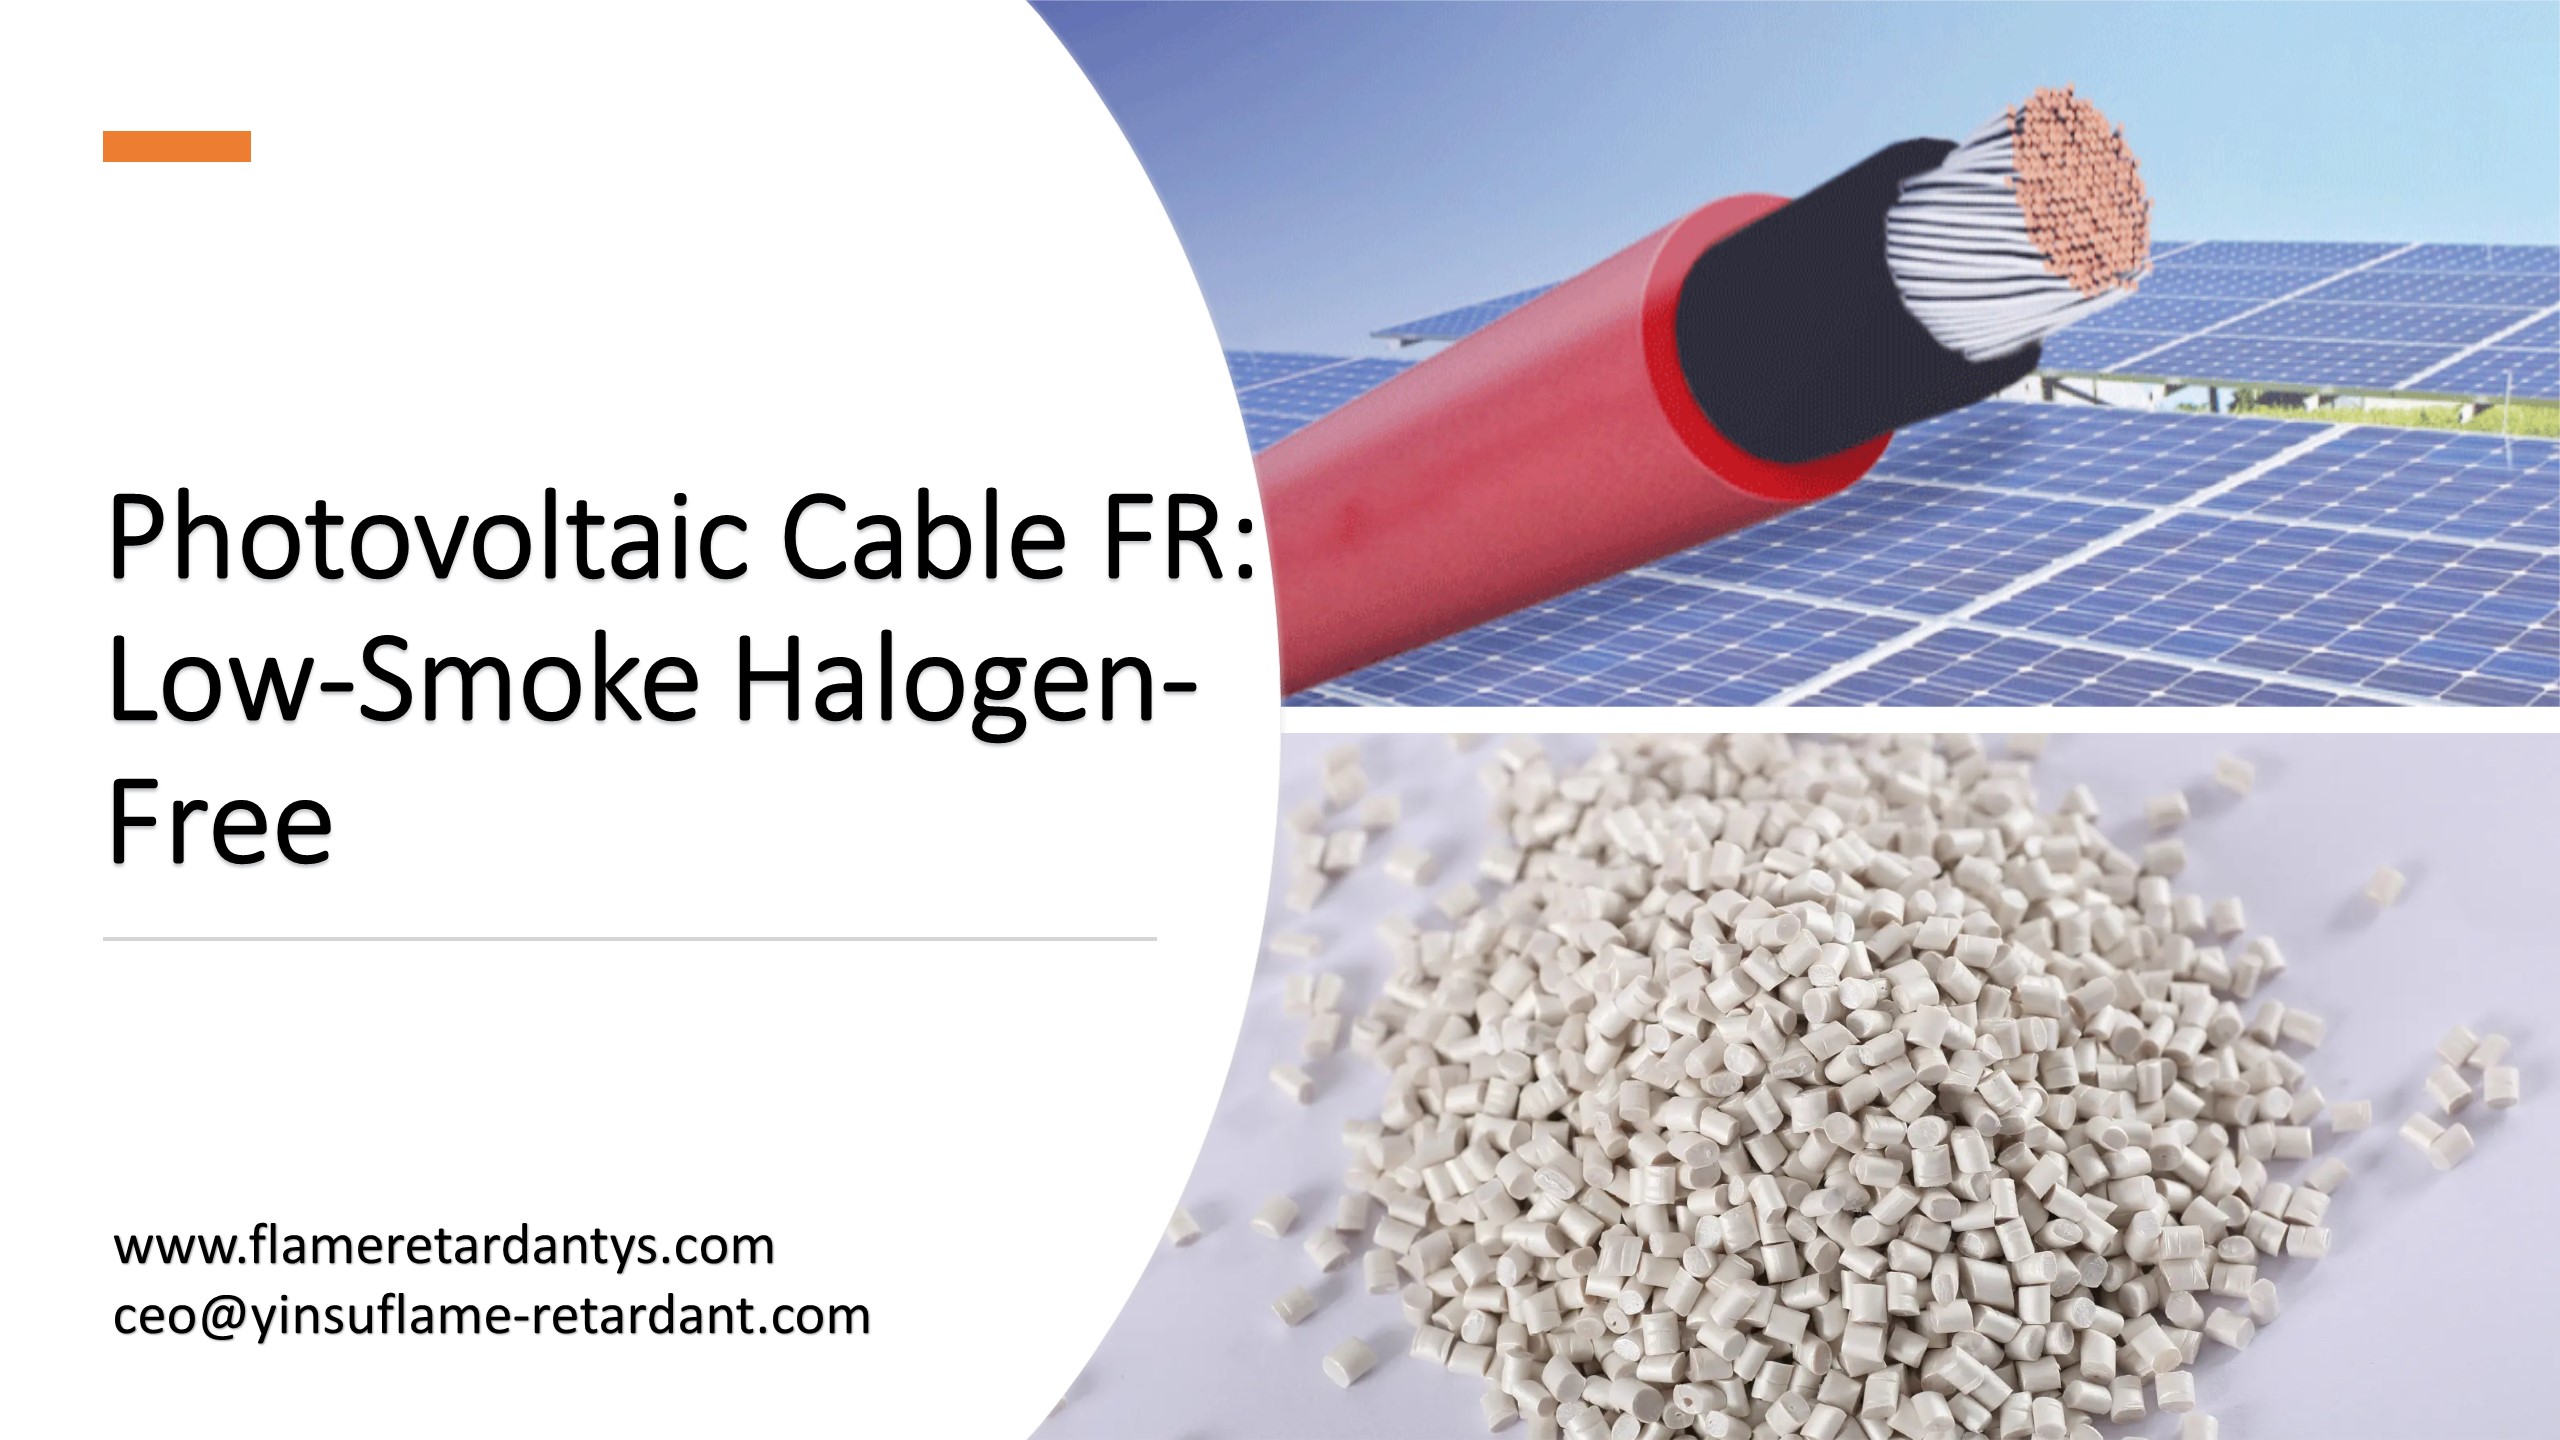 Фотоэлектрический кабель FR с низким содержанием дыма, без галогенов